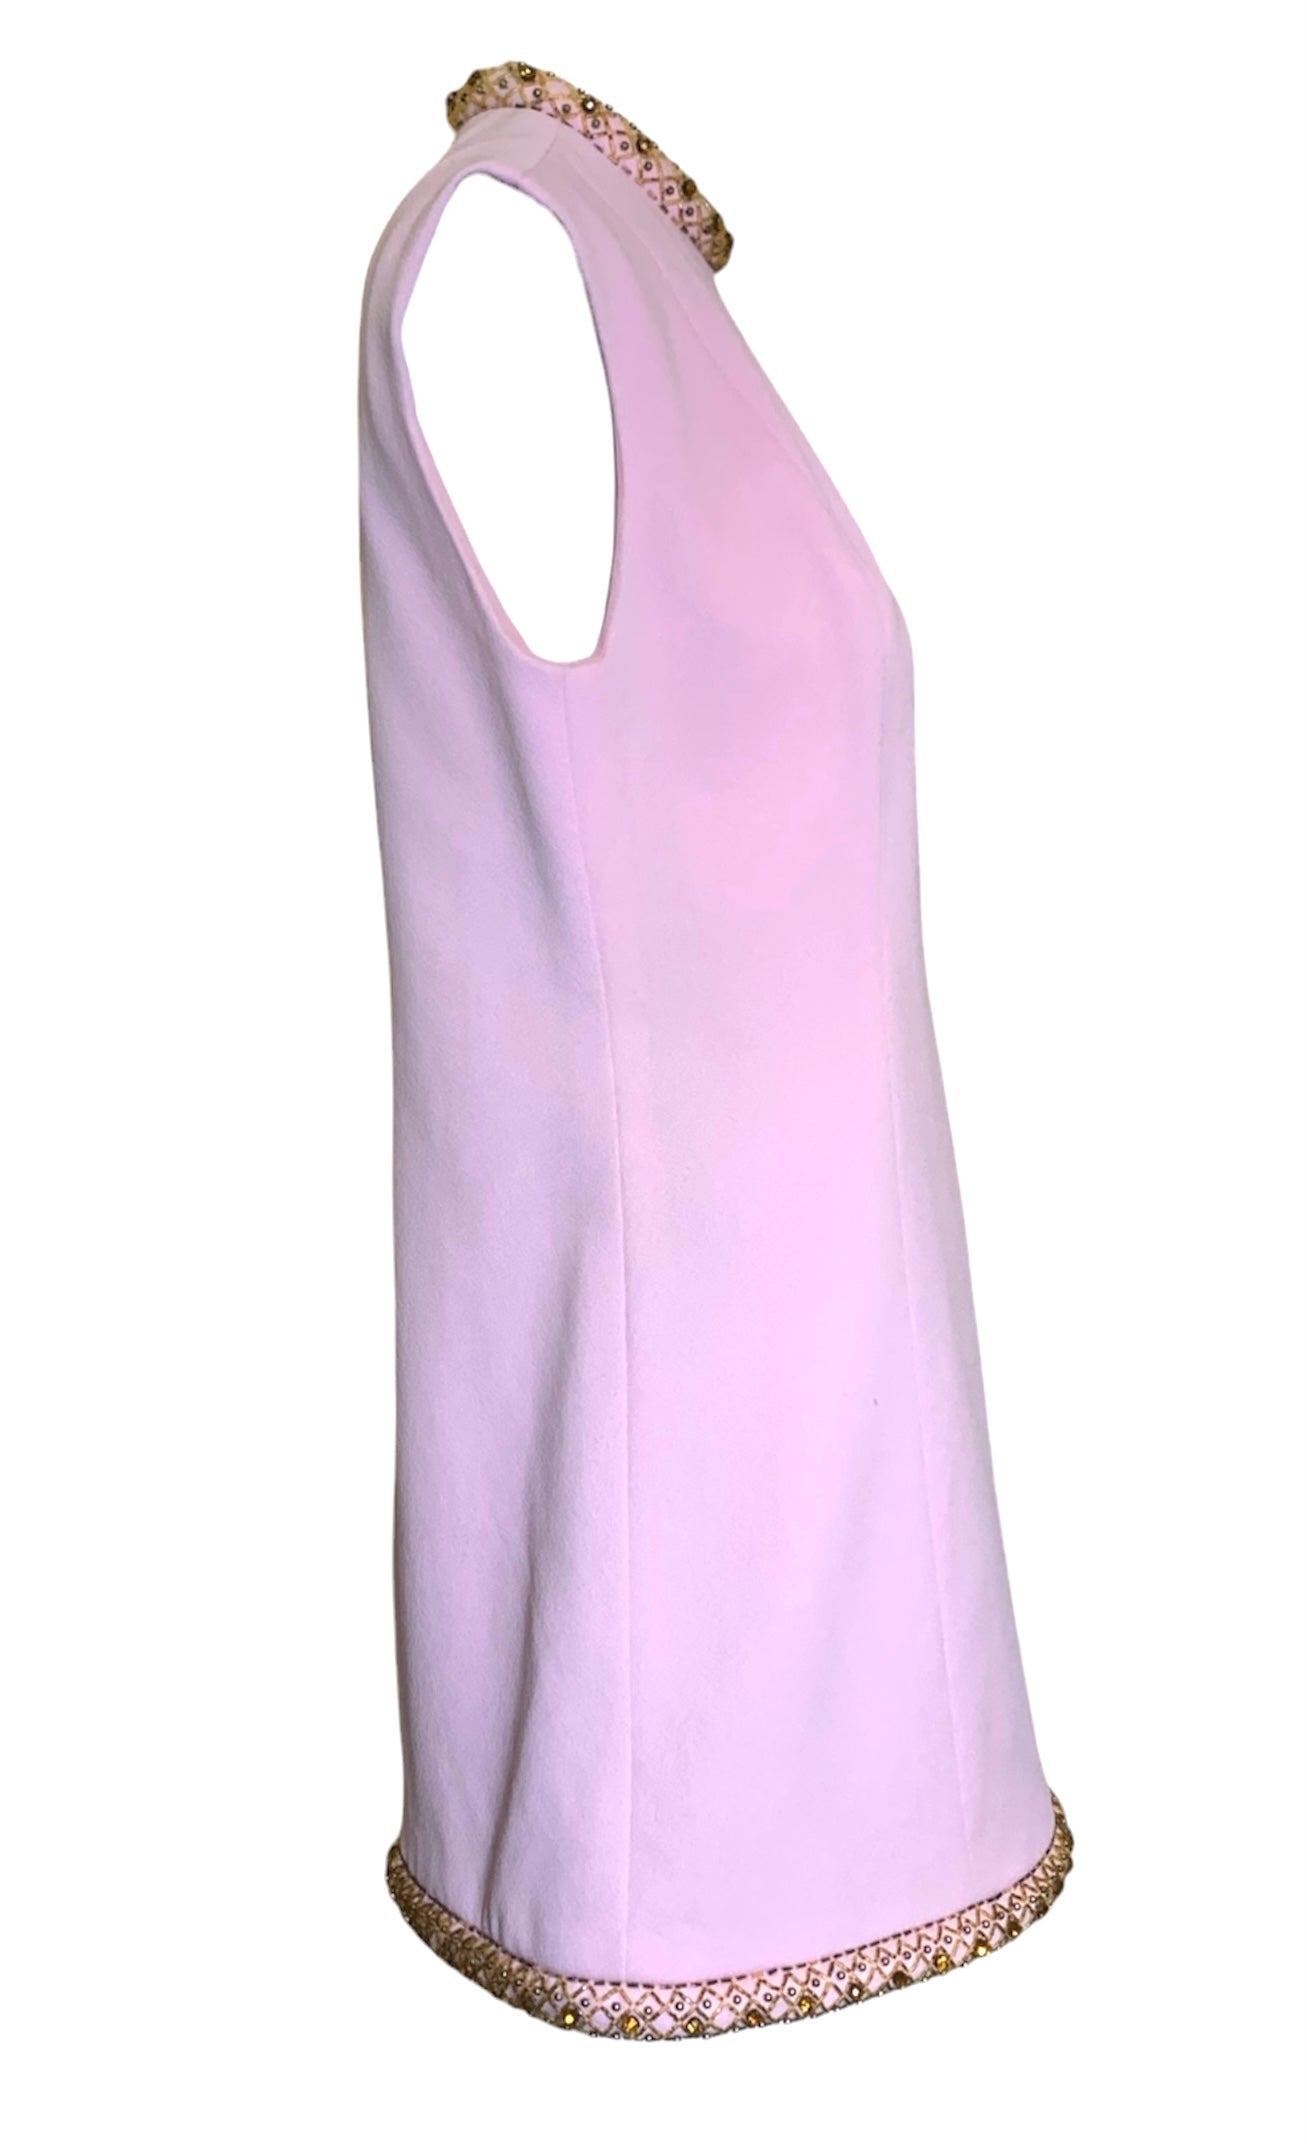 Fred Rothschild 60s Bubblegum Pink Shift Dress with Amber Embellished Collar & Hem SIDE 2/5